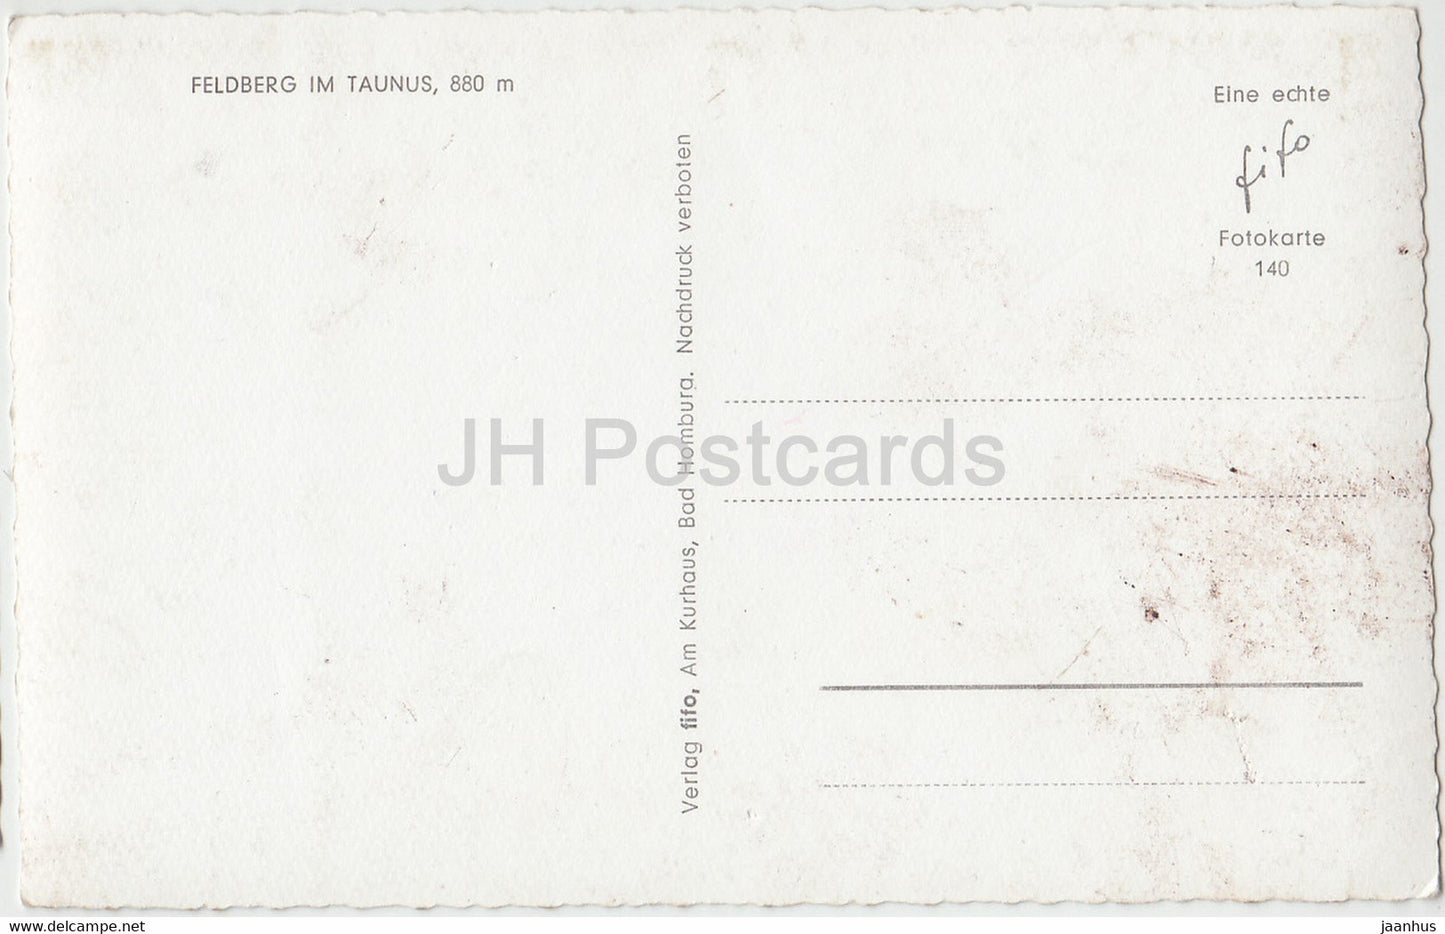 Feldberg im Taunus 880 m - old postcard - Germany - unused